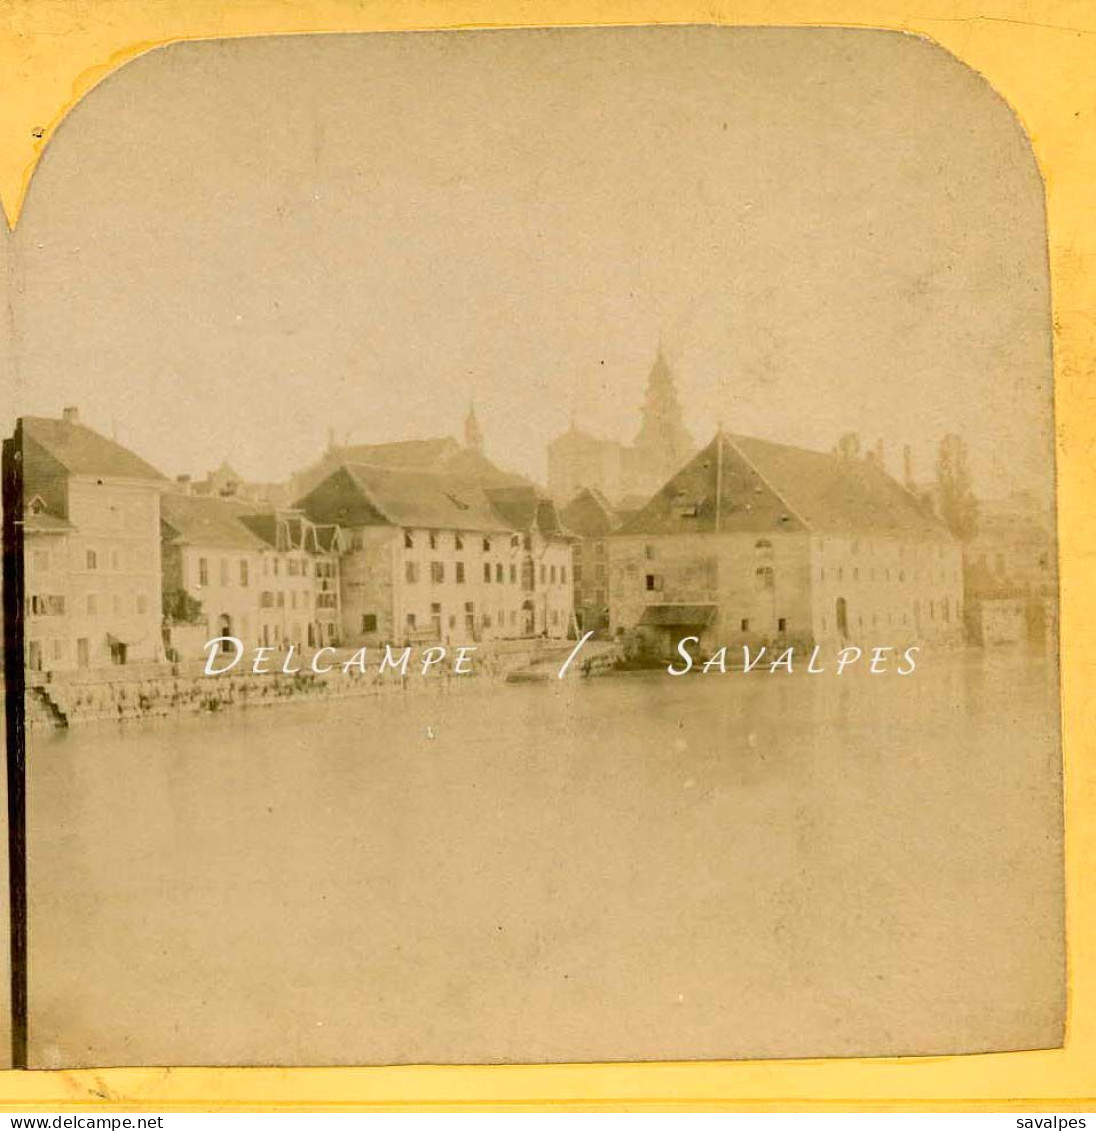 Suisse * Solothurn, Soleure Bords De L’Aar * Photo Stéréoscopique Bertrand Vers 1858 - Photos Stéréoscopiques